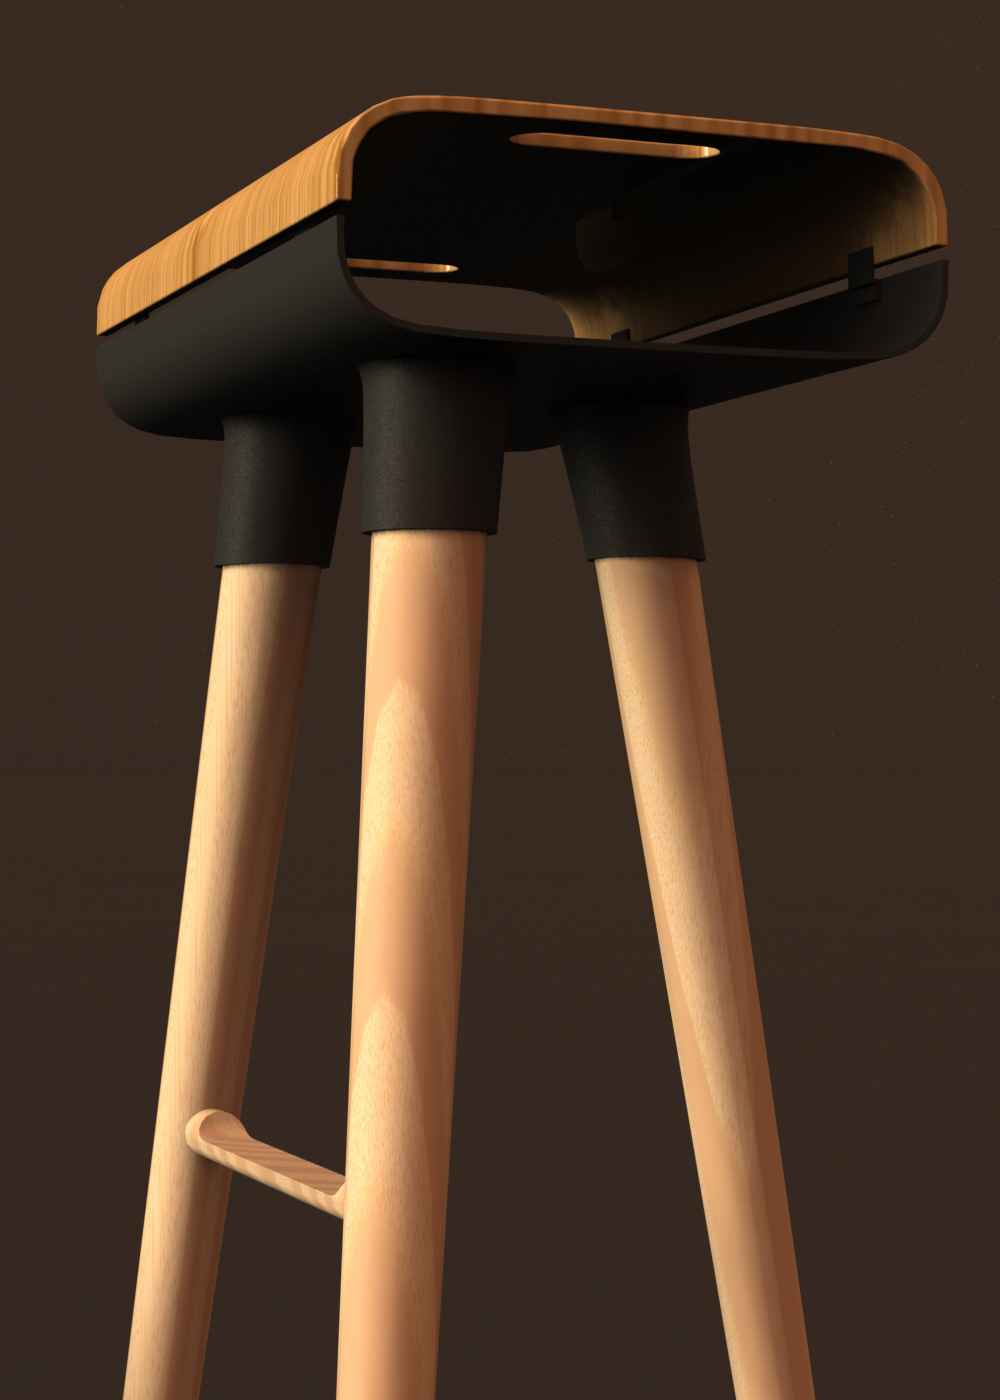 bar stool chair wood metal Render sketch furniture